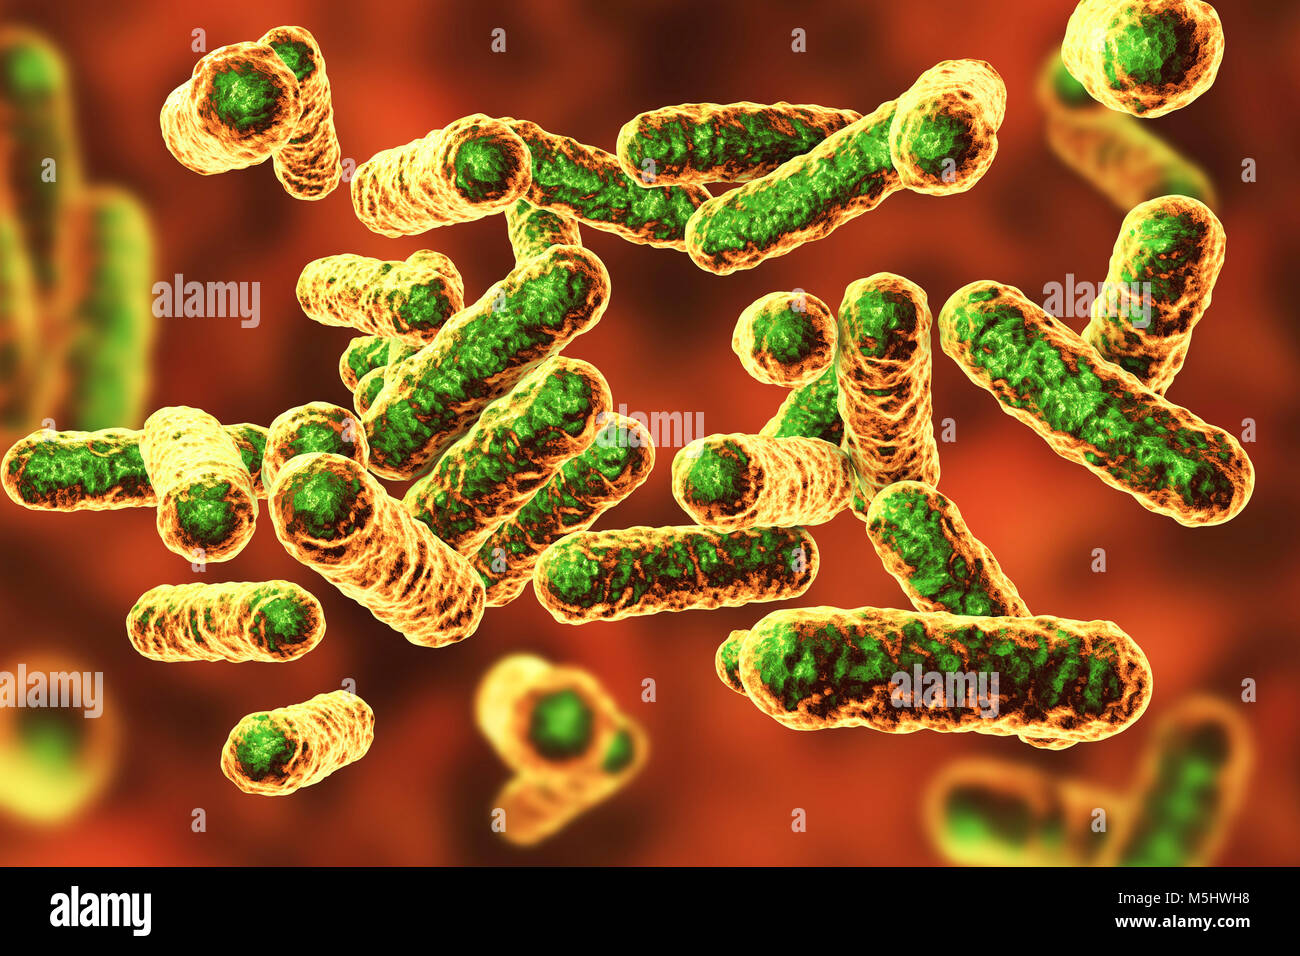 La bacteria Bartonella quintana, ilustración. Este es el agente causal de la fiebre de las trincheras, y antiguamente era conocida como Rochalimaea bacterias. Foto de stock